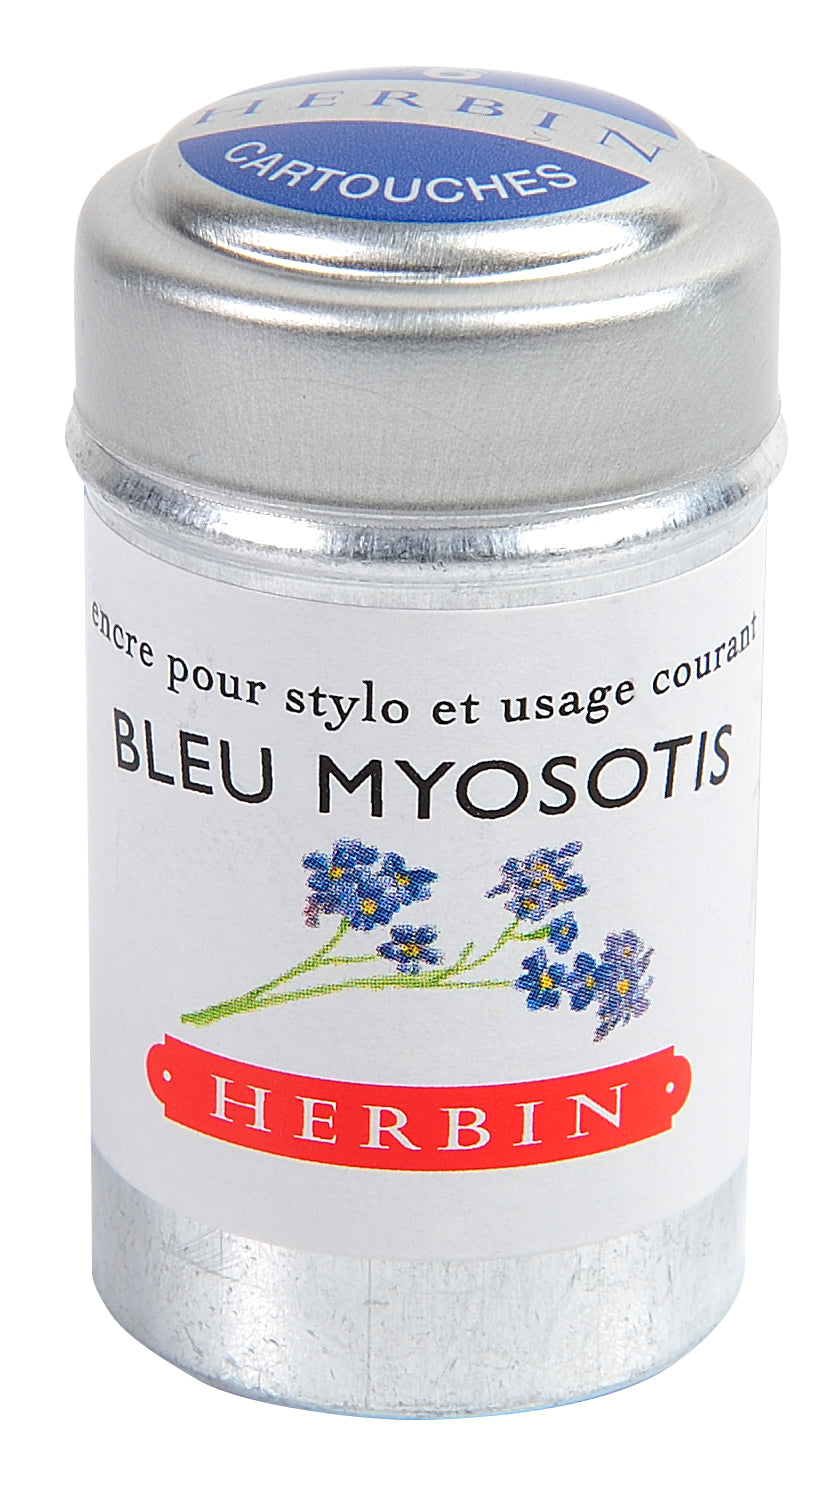 Herbin - Bleu myositis (Blau Vergissmeinnicht), 6 Patronen